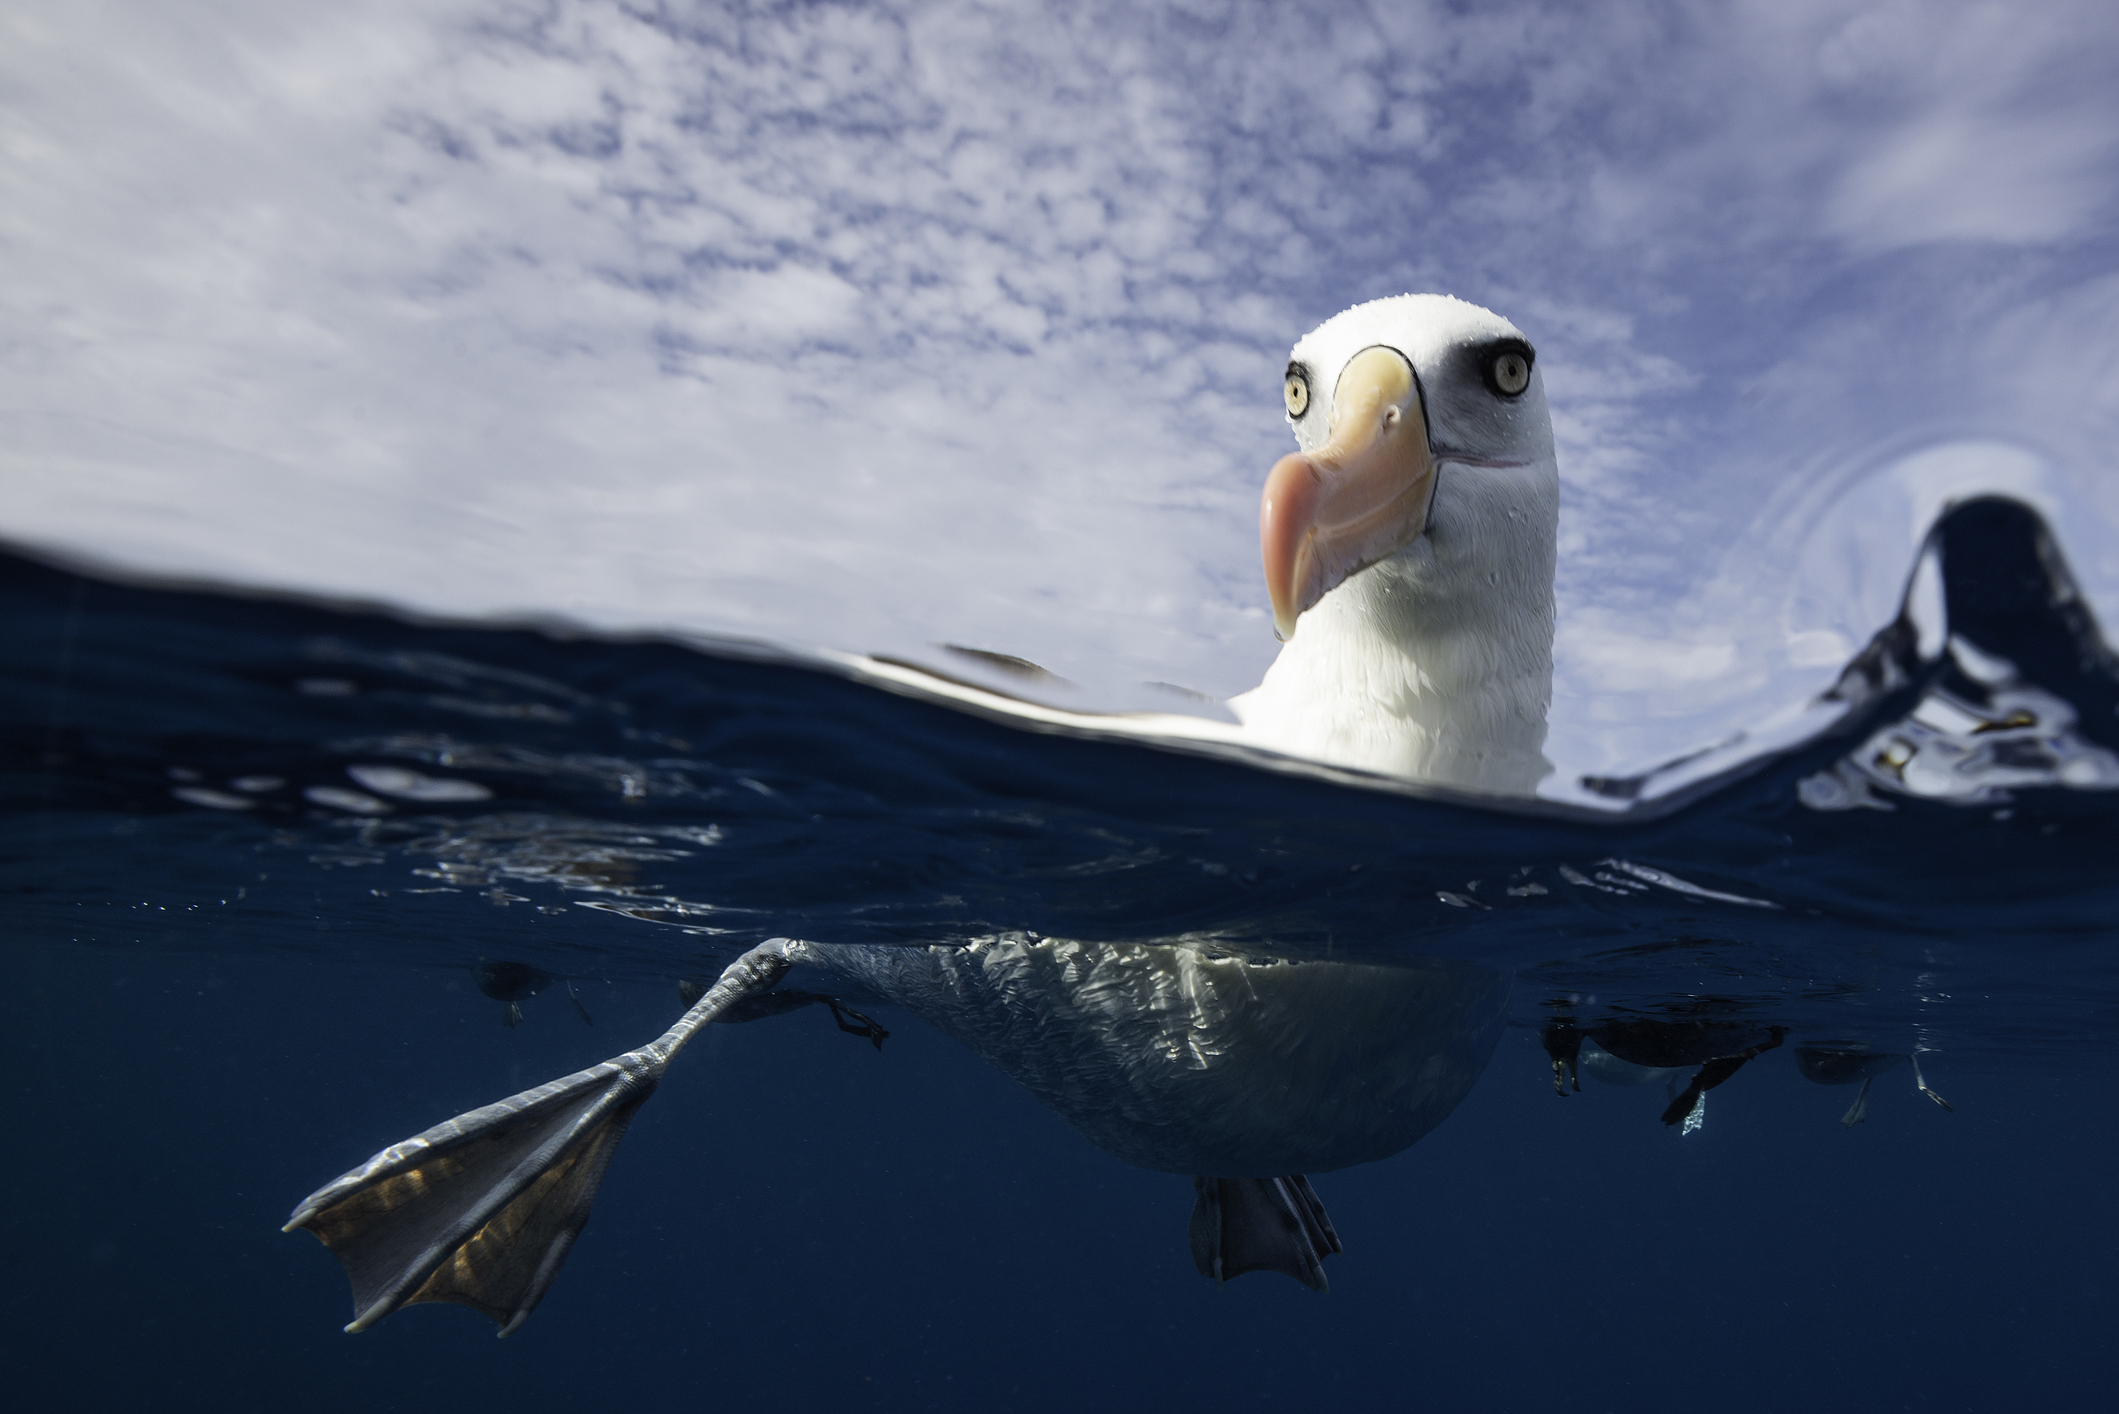 Альбатросы способны нырять на гораздо большие глубины, чем считалось